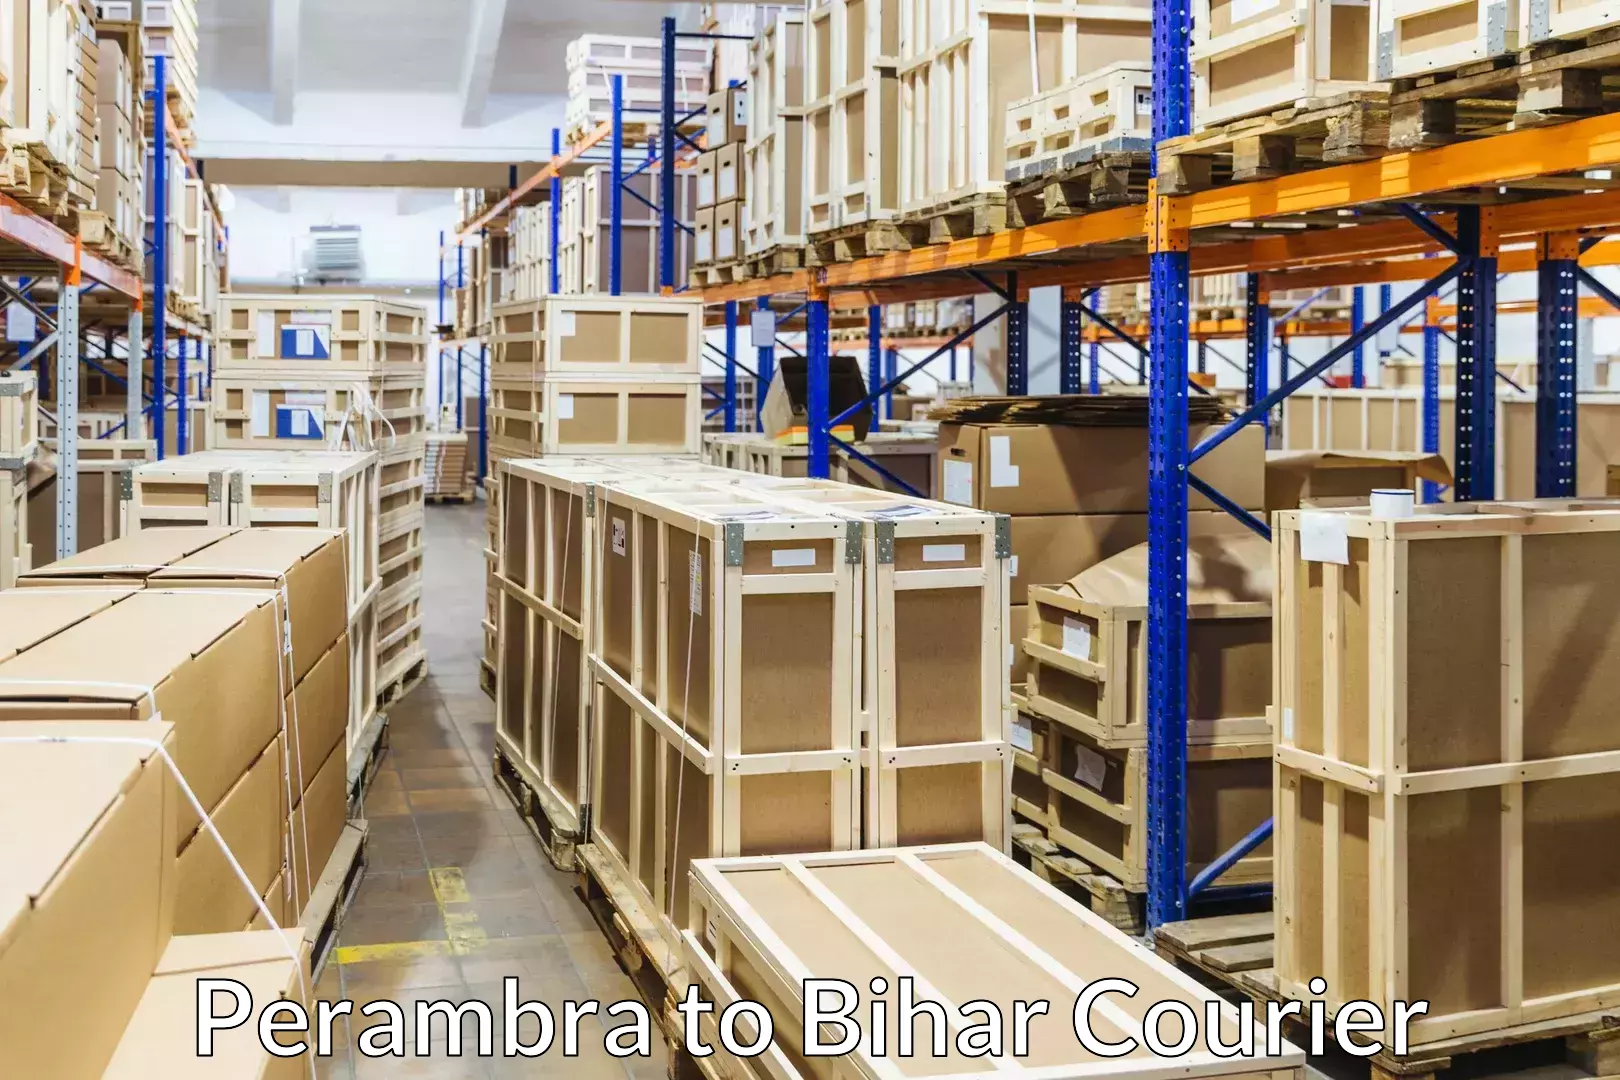 Furniture handling services Perambra to Barhiya